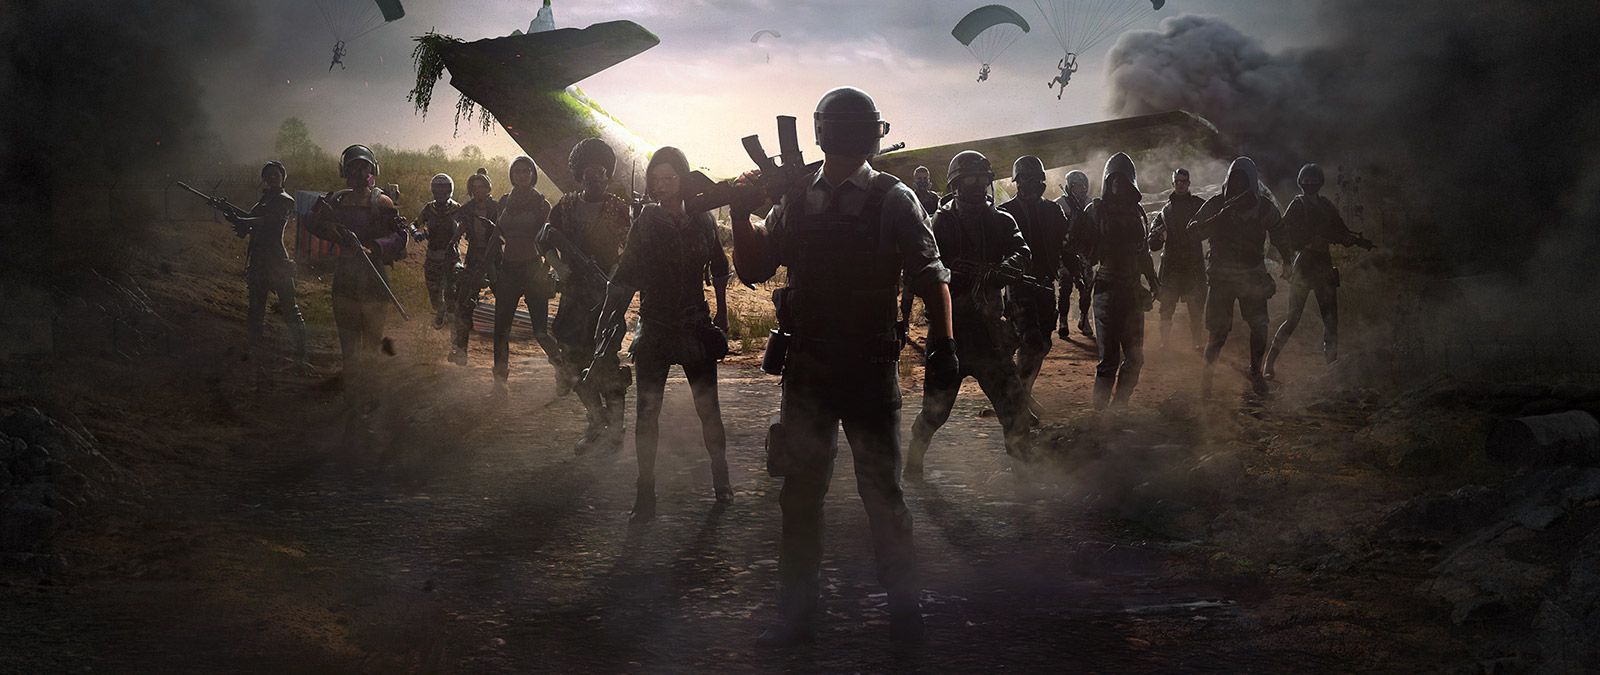 Bir grup oyuncu düşen bir uçağın etrafında toplanırken, diğerleri paraşütlerle iniş yapıyor.